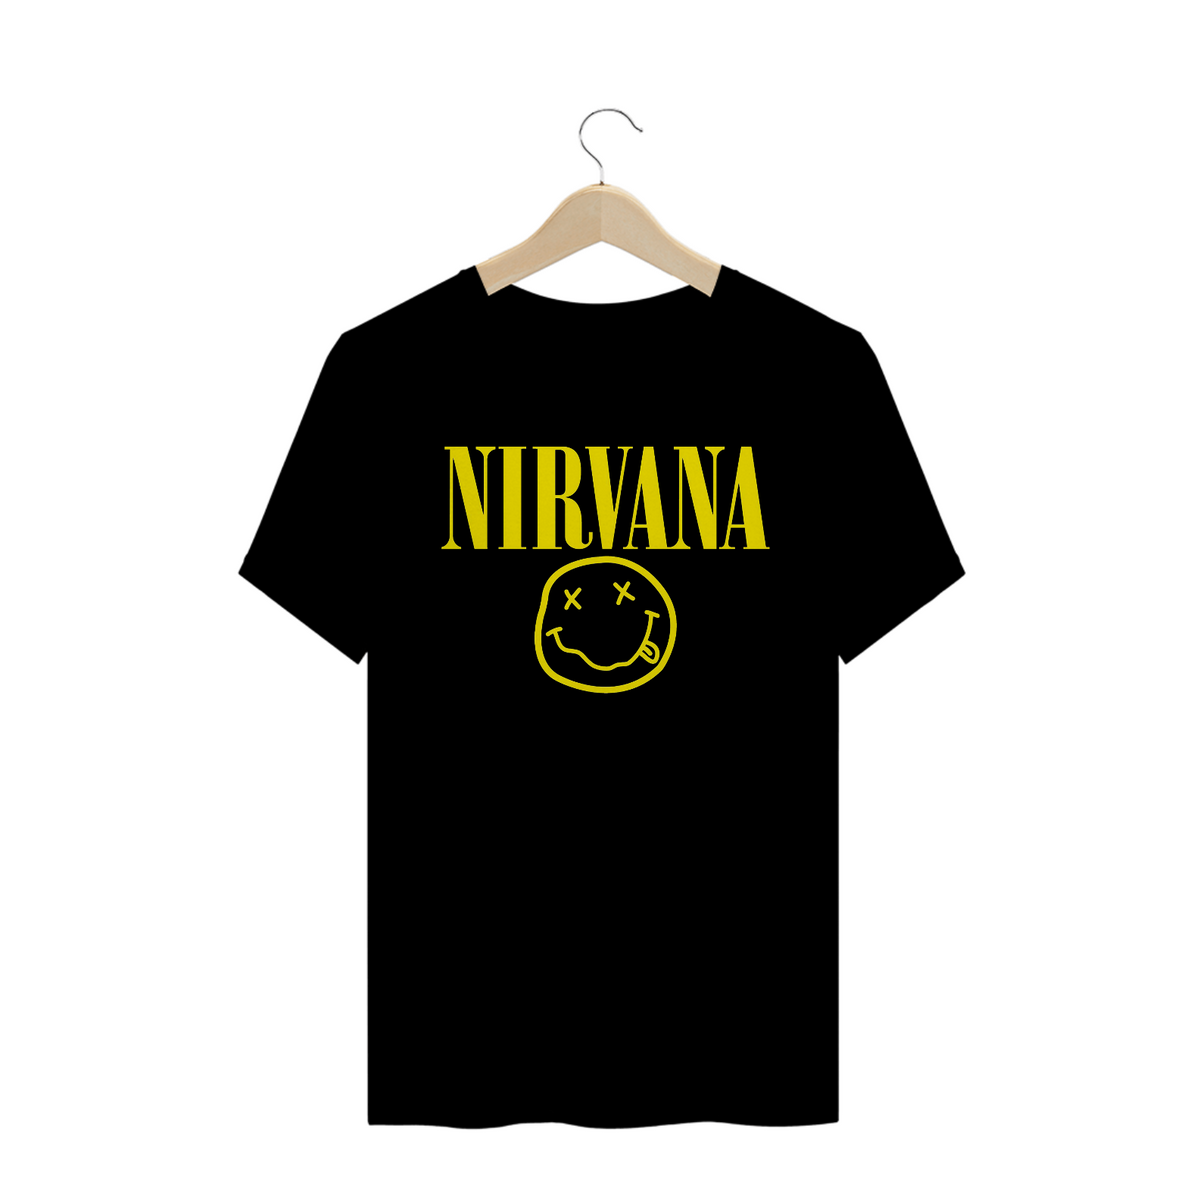 Nome do produto: Camisa Nirvana